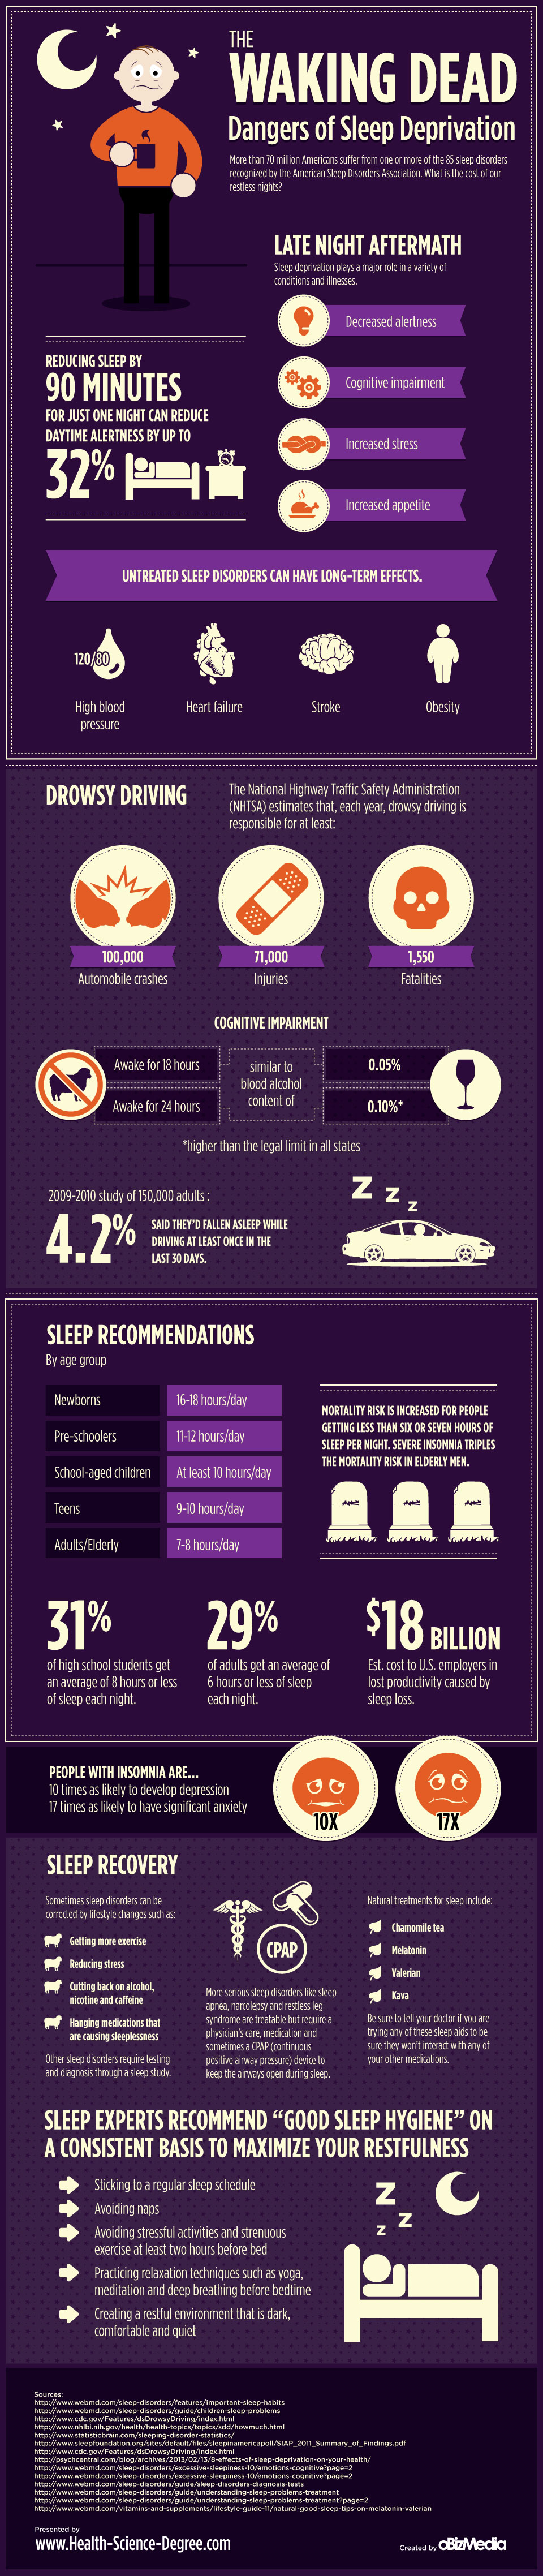 12 Dangers of Sleep Deprivation